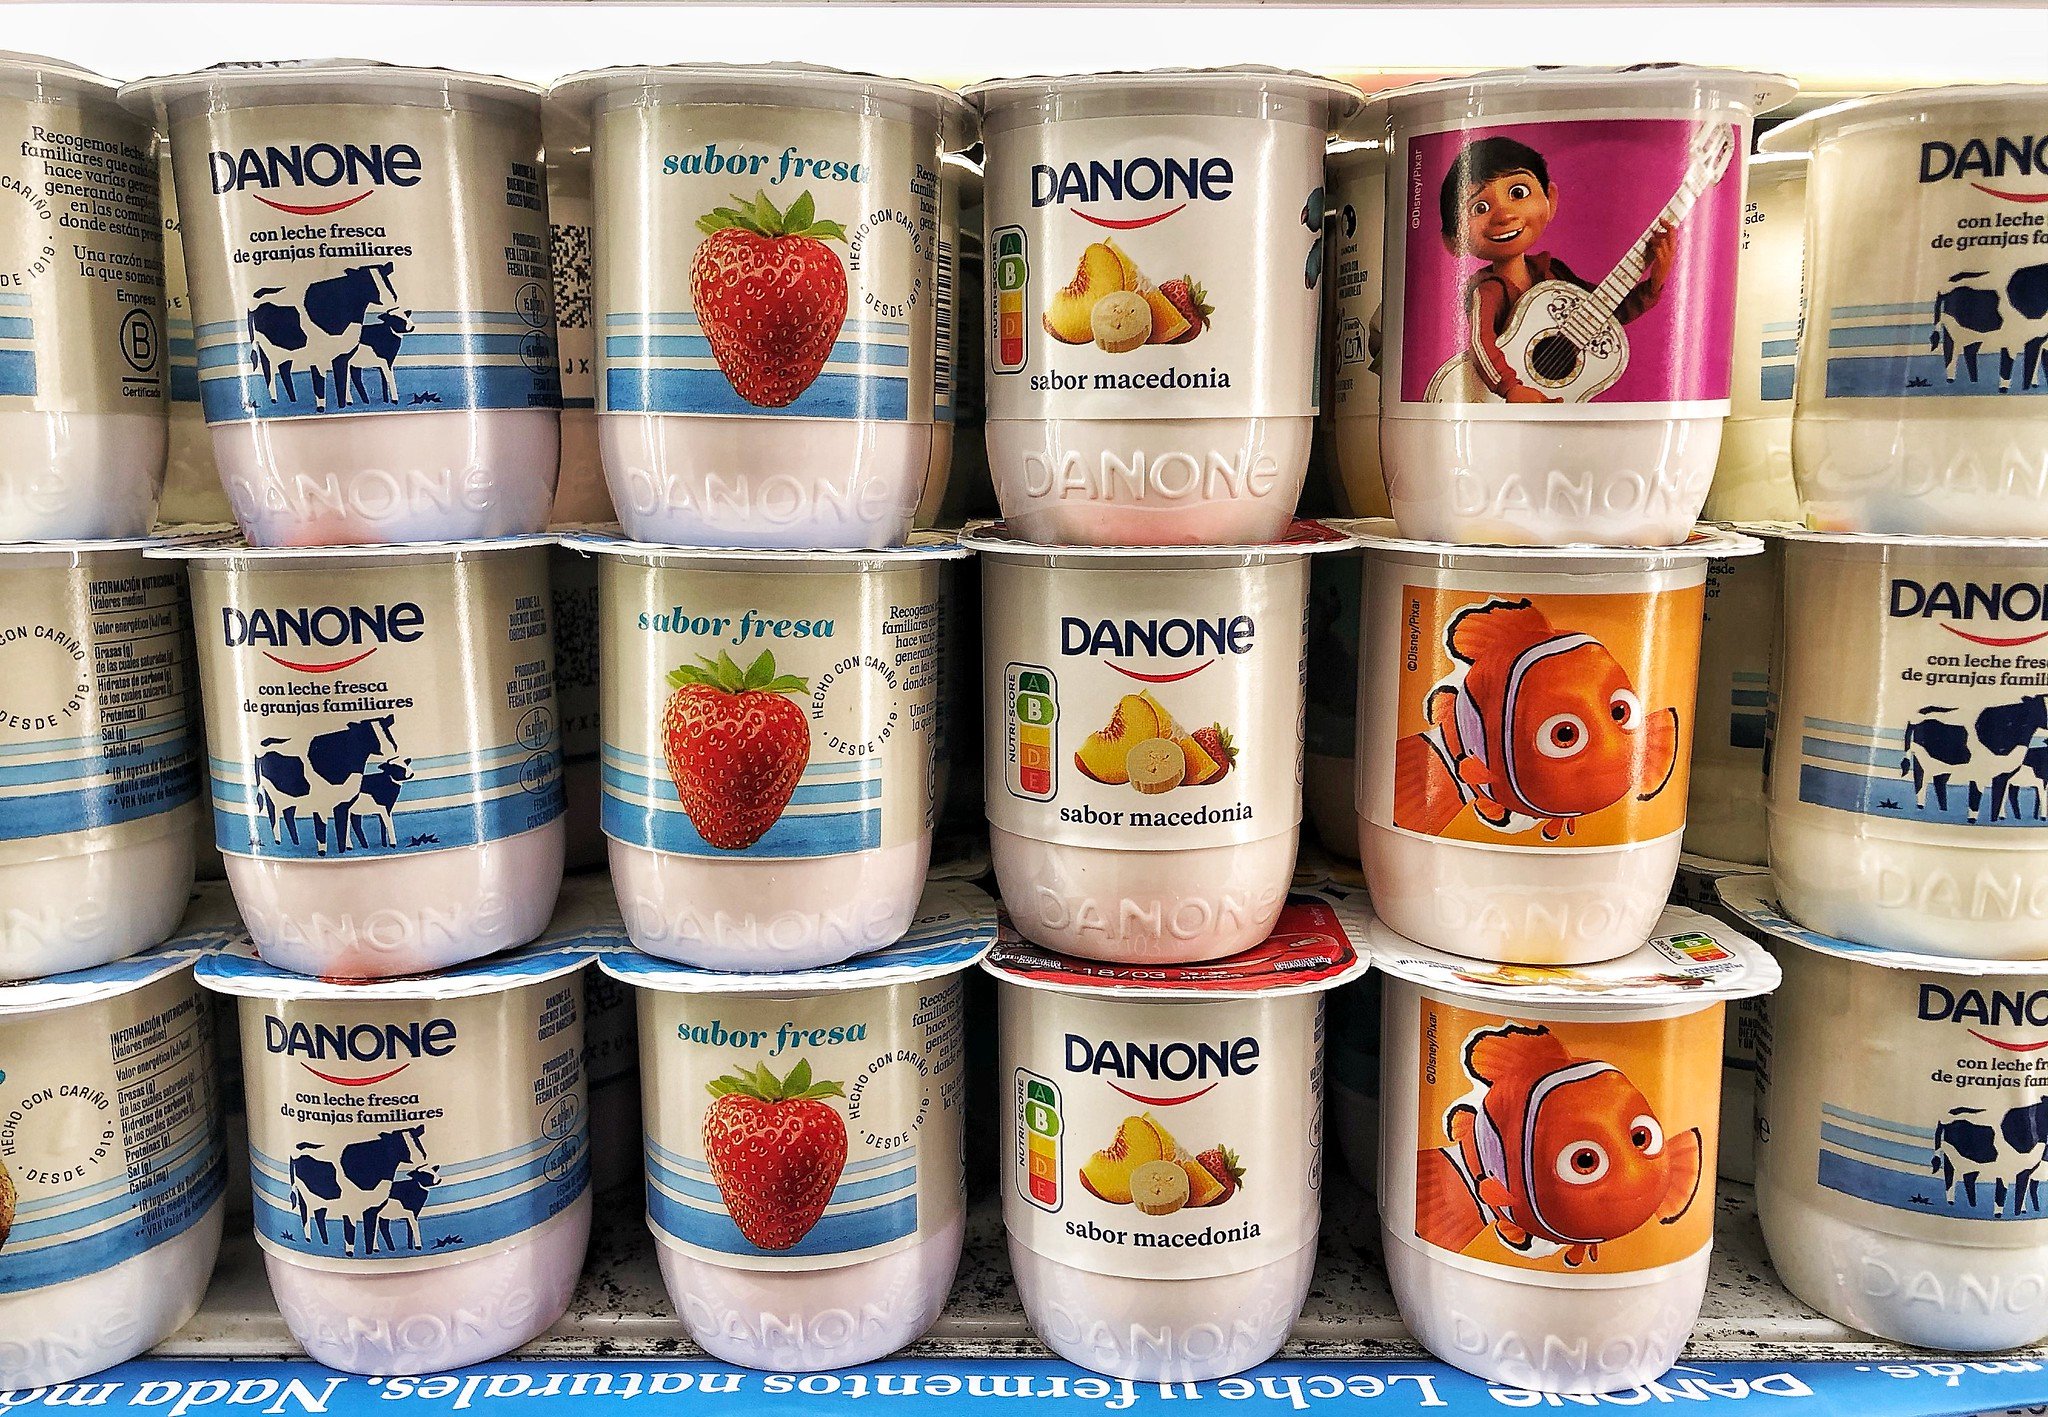 El yogur, un negocio perenne: Danone dispara su beneficio